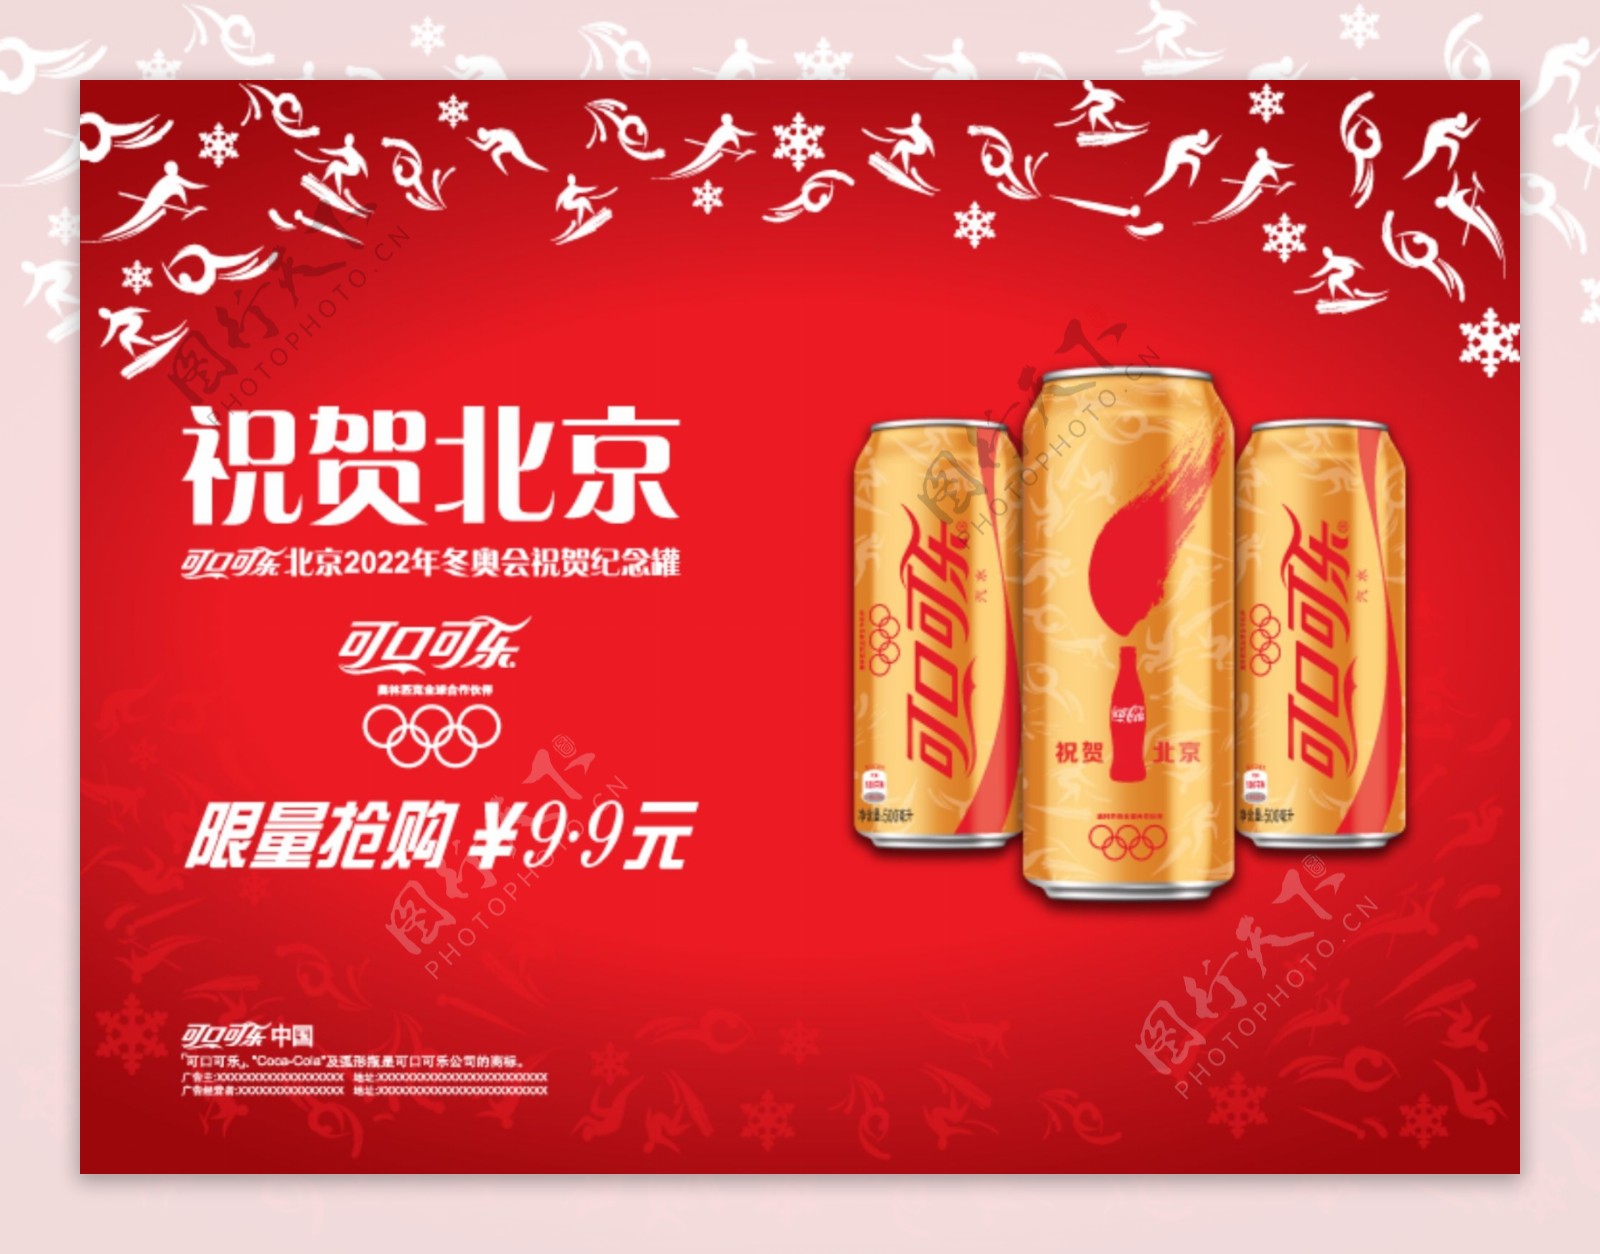 可口可乐祝贺北京图片